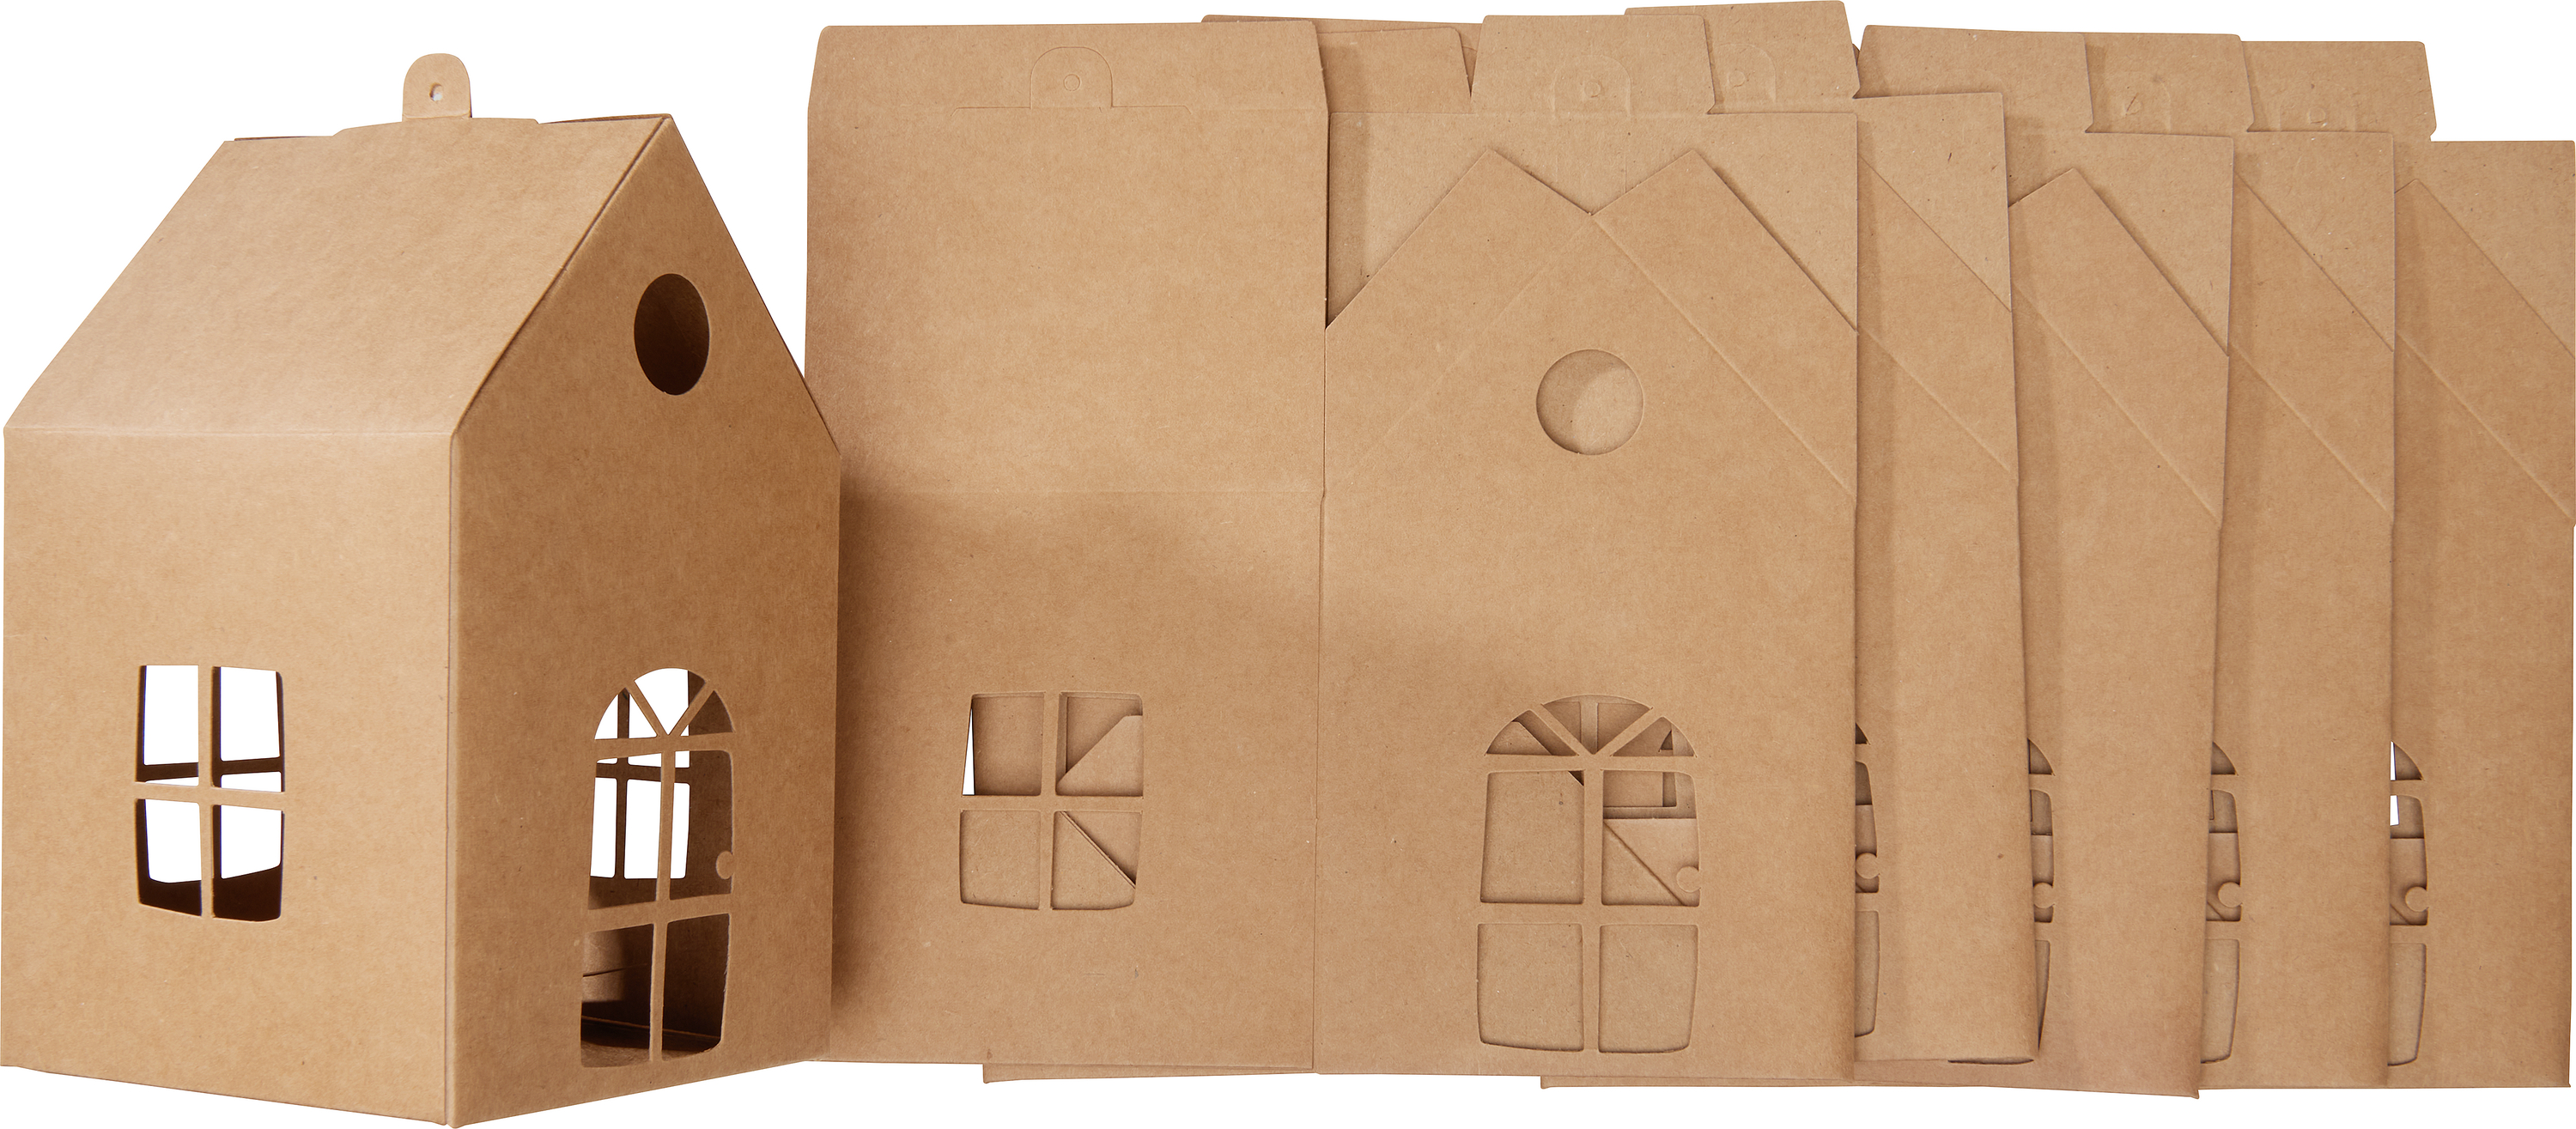 Porte Serviettes ou courrier à Décorer en carton - Kits Creatifs